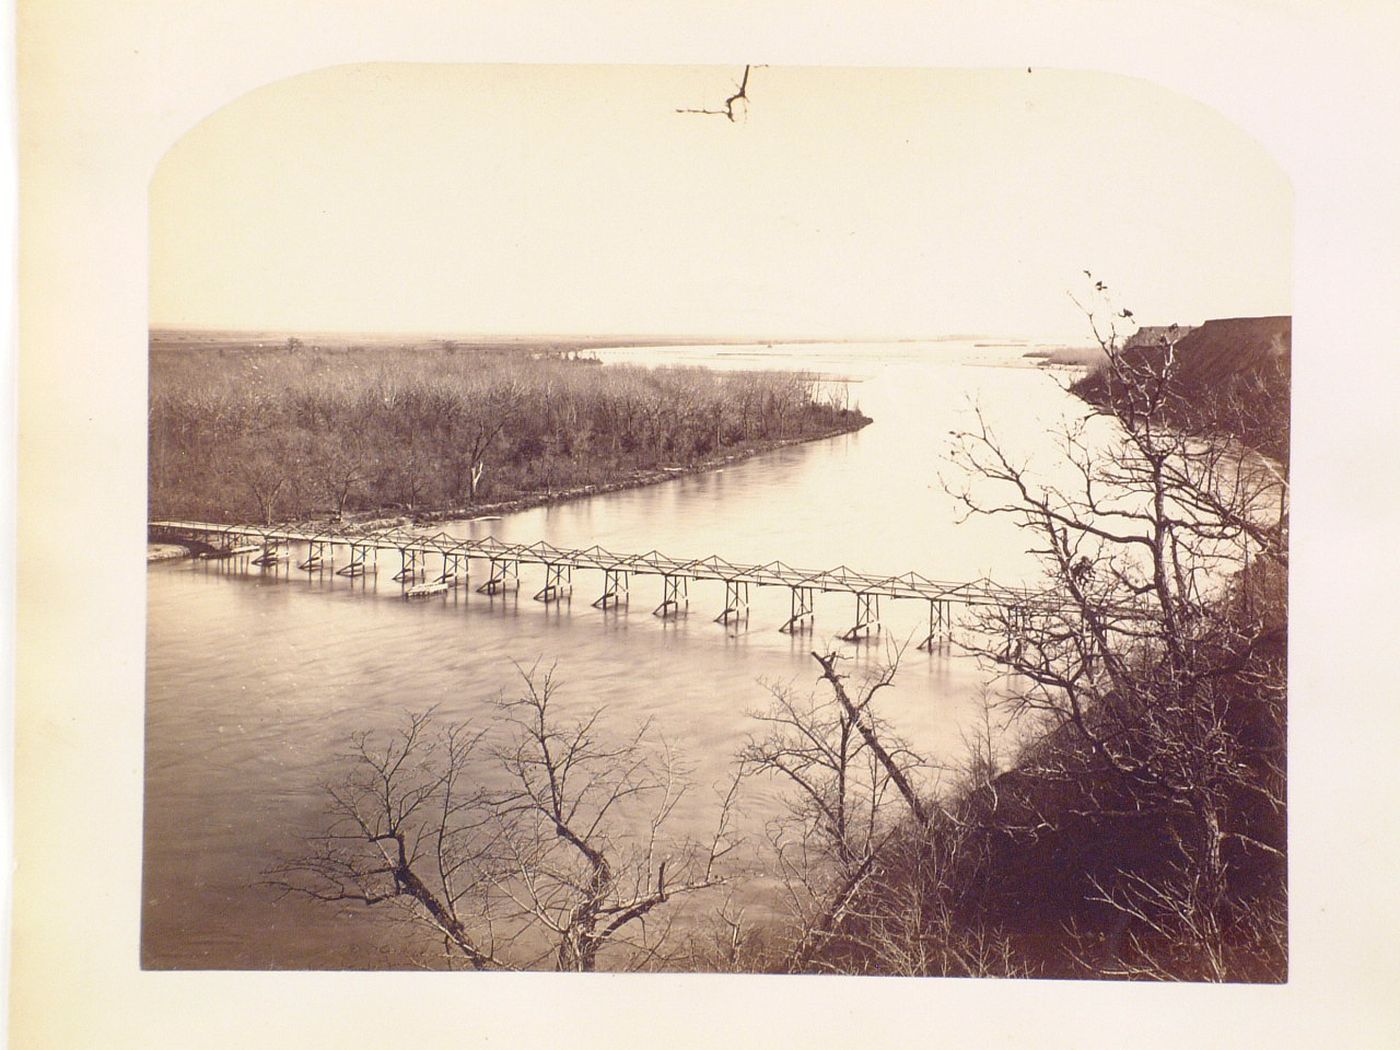 Bridge across river